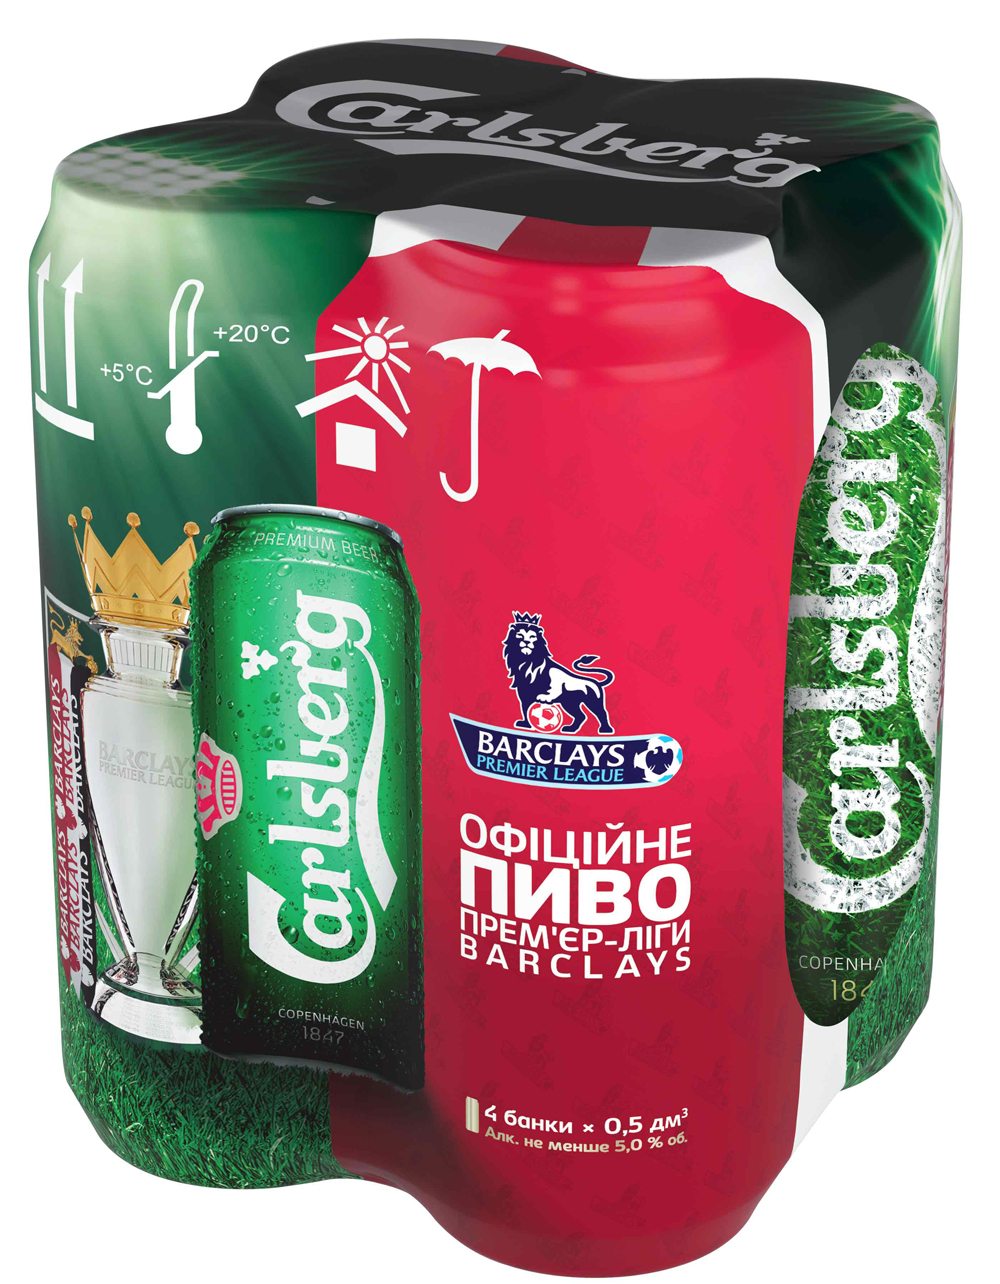 Carlsberg начал выпуск пива с символикой Английской Премьер-Лиги